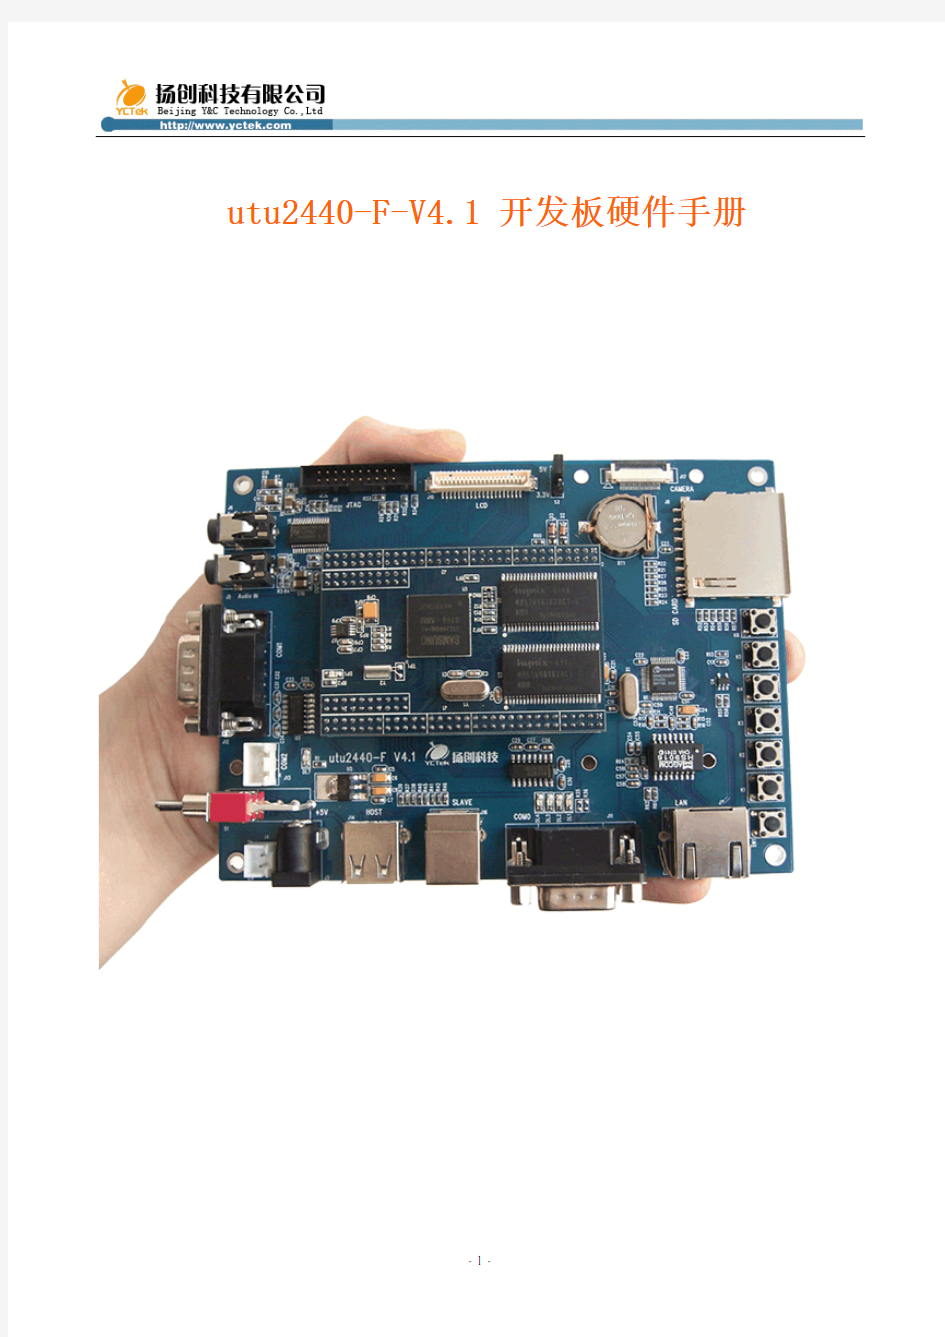 开发板硬件手册-utu2440-F-V4.1